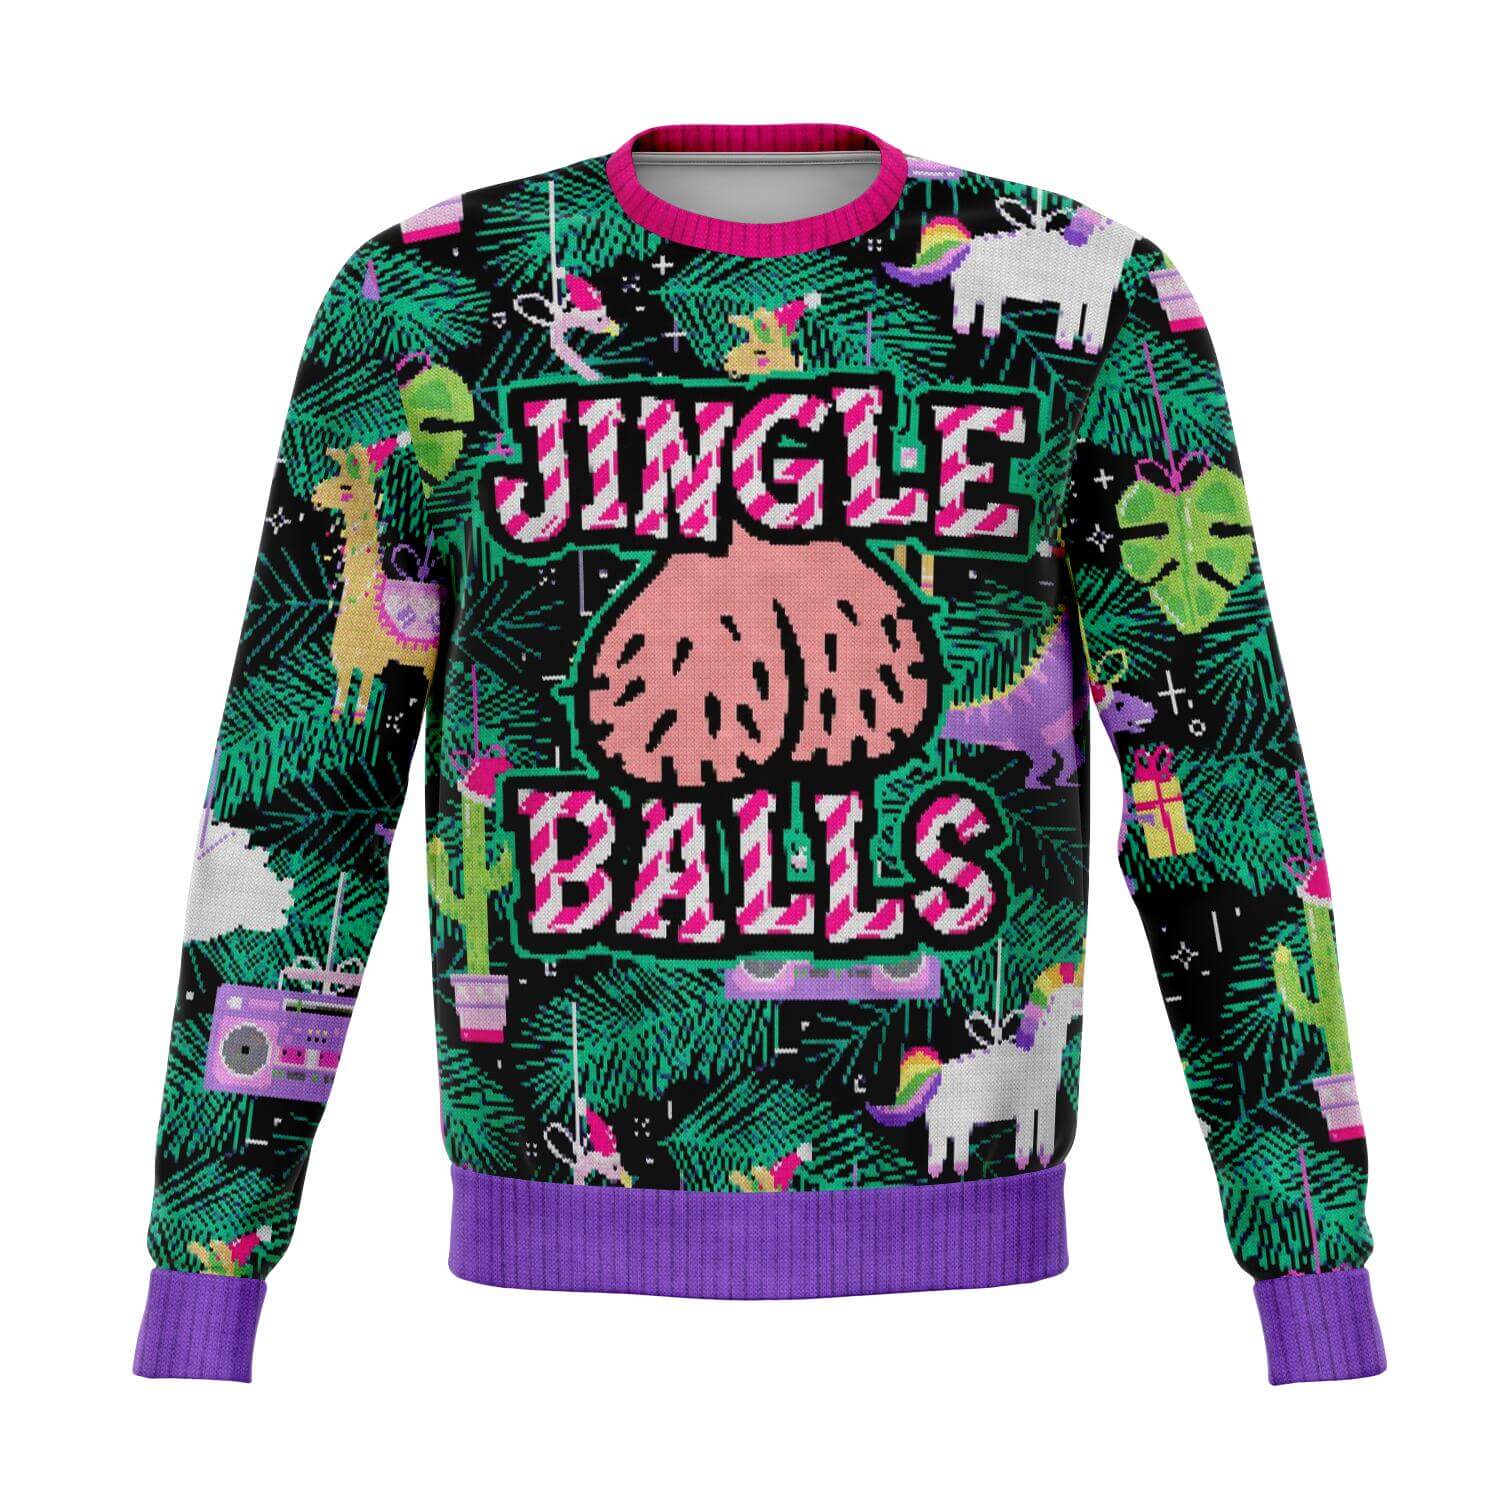 Fun Xmas Sweatshirt - Jingle Balls - front view